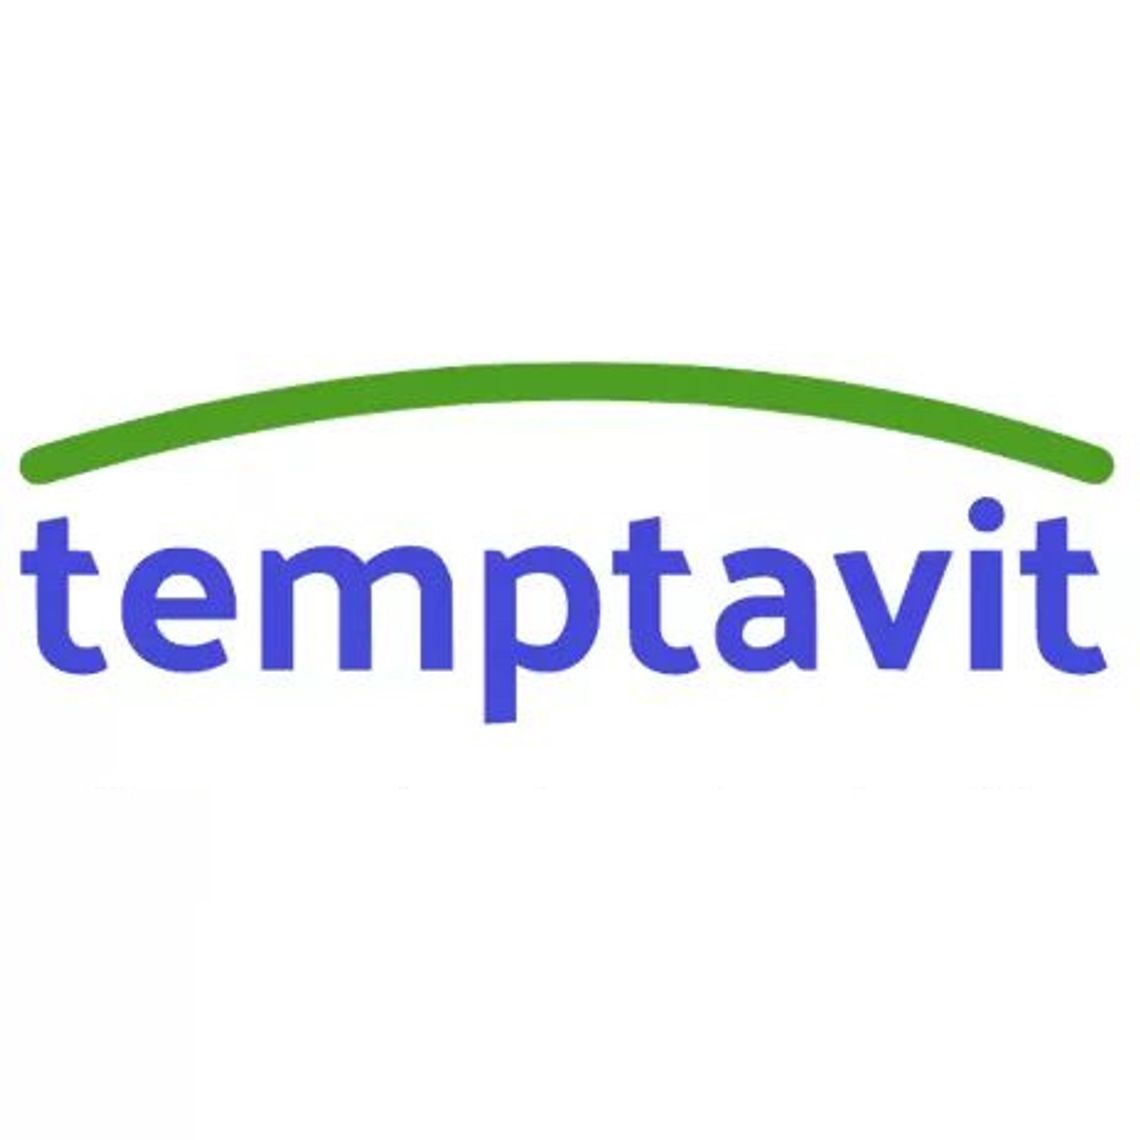 Temptavit